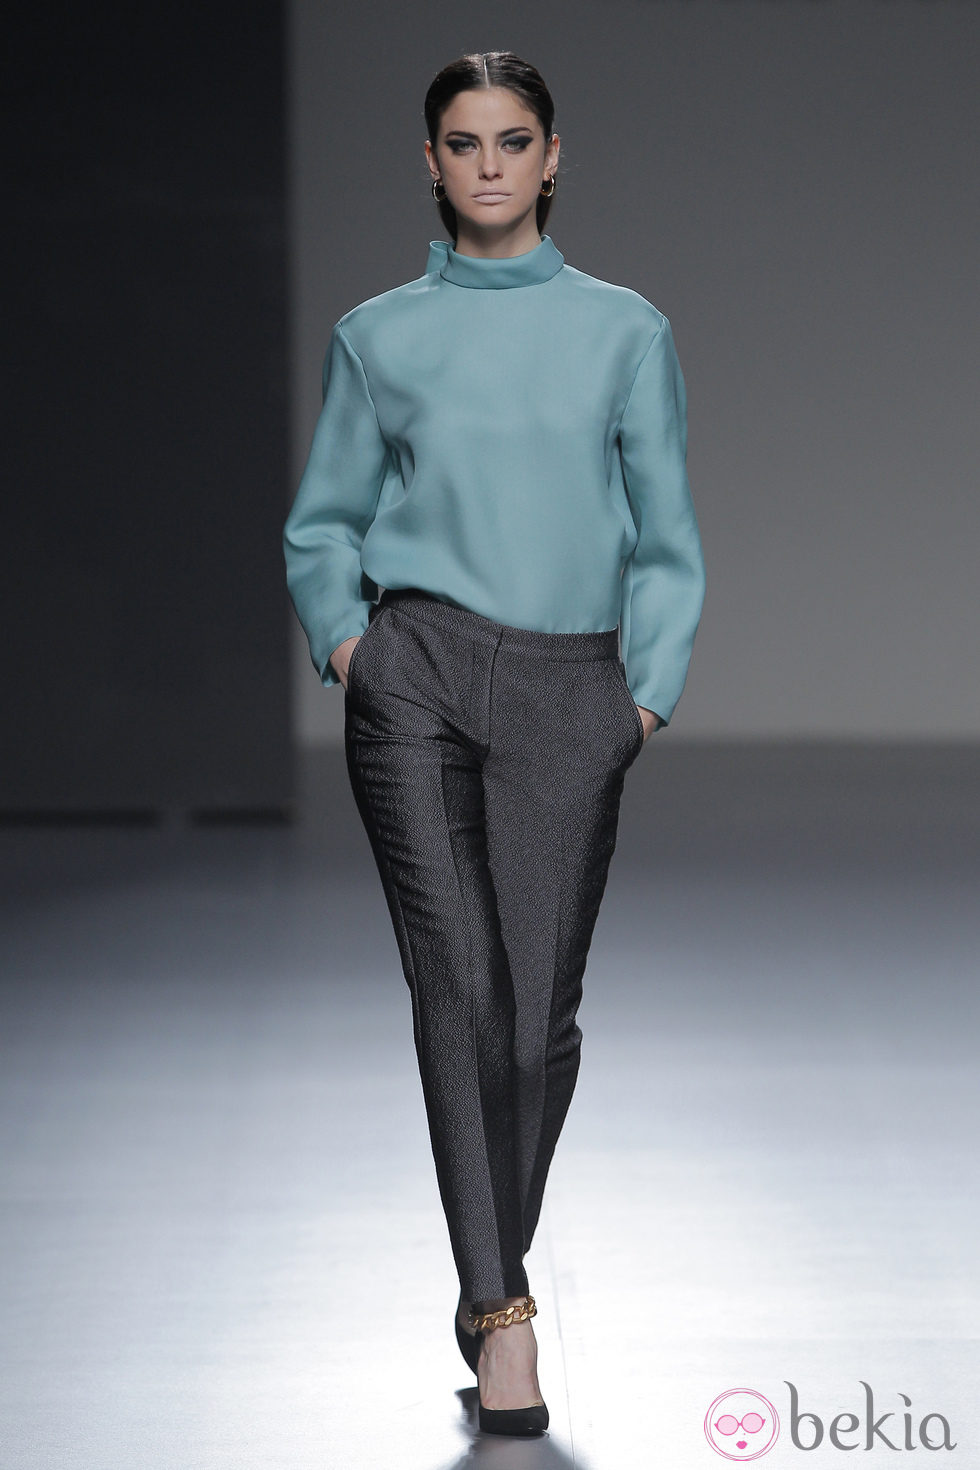 Pantalón gris brillante de la colección otoño/invierno 2013/2014 de Ángel Schlesser en Madrid Fashion Week